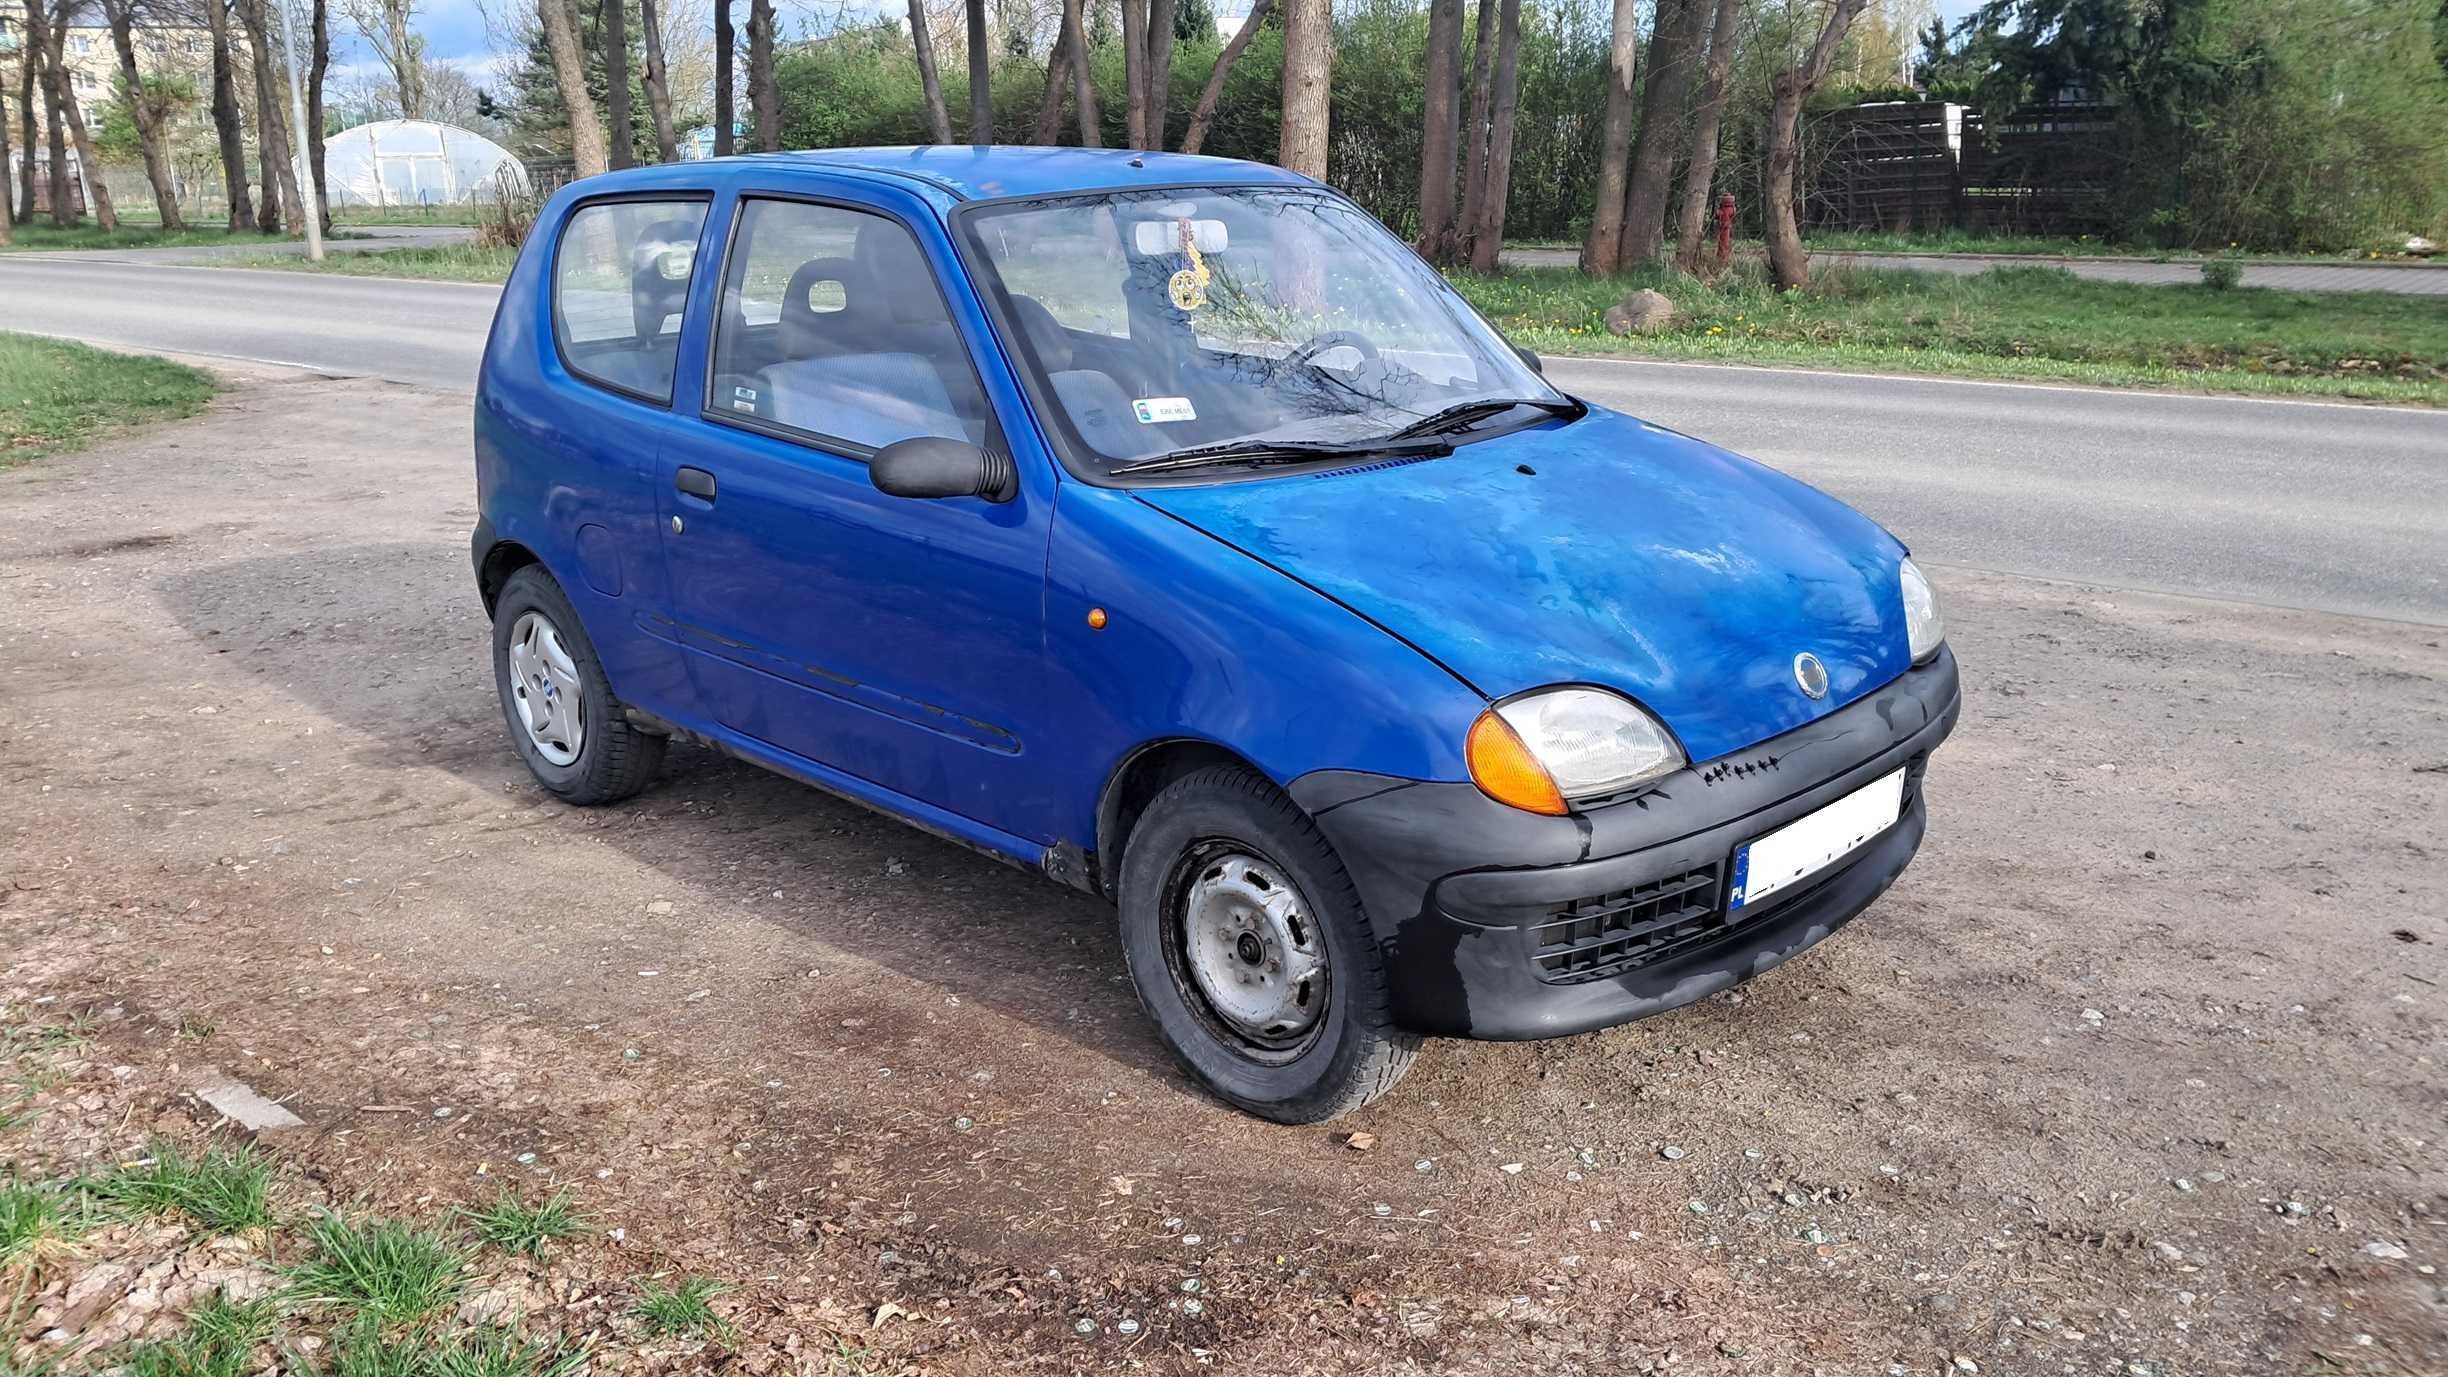 Fiat Seicento 0,9 LPG GAZ 2001r 147tys km W Pełni Sprawny Ładna Blacha